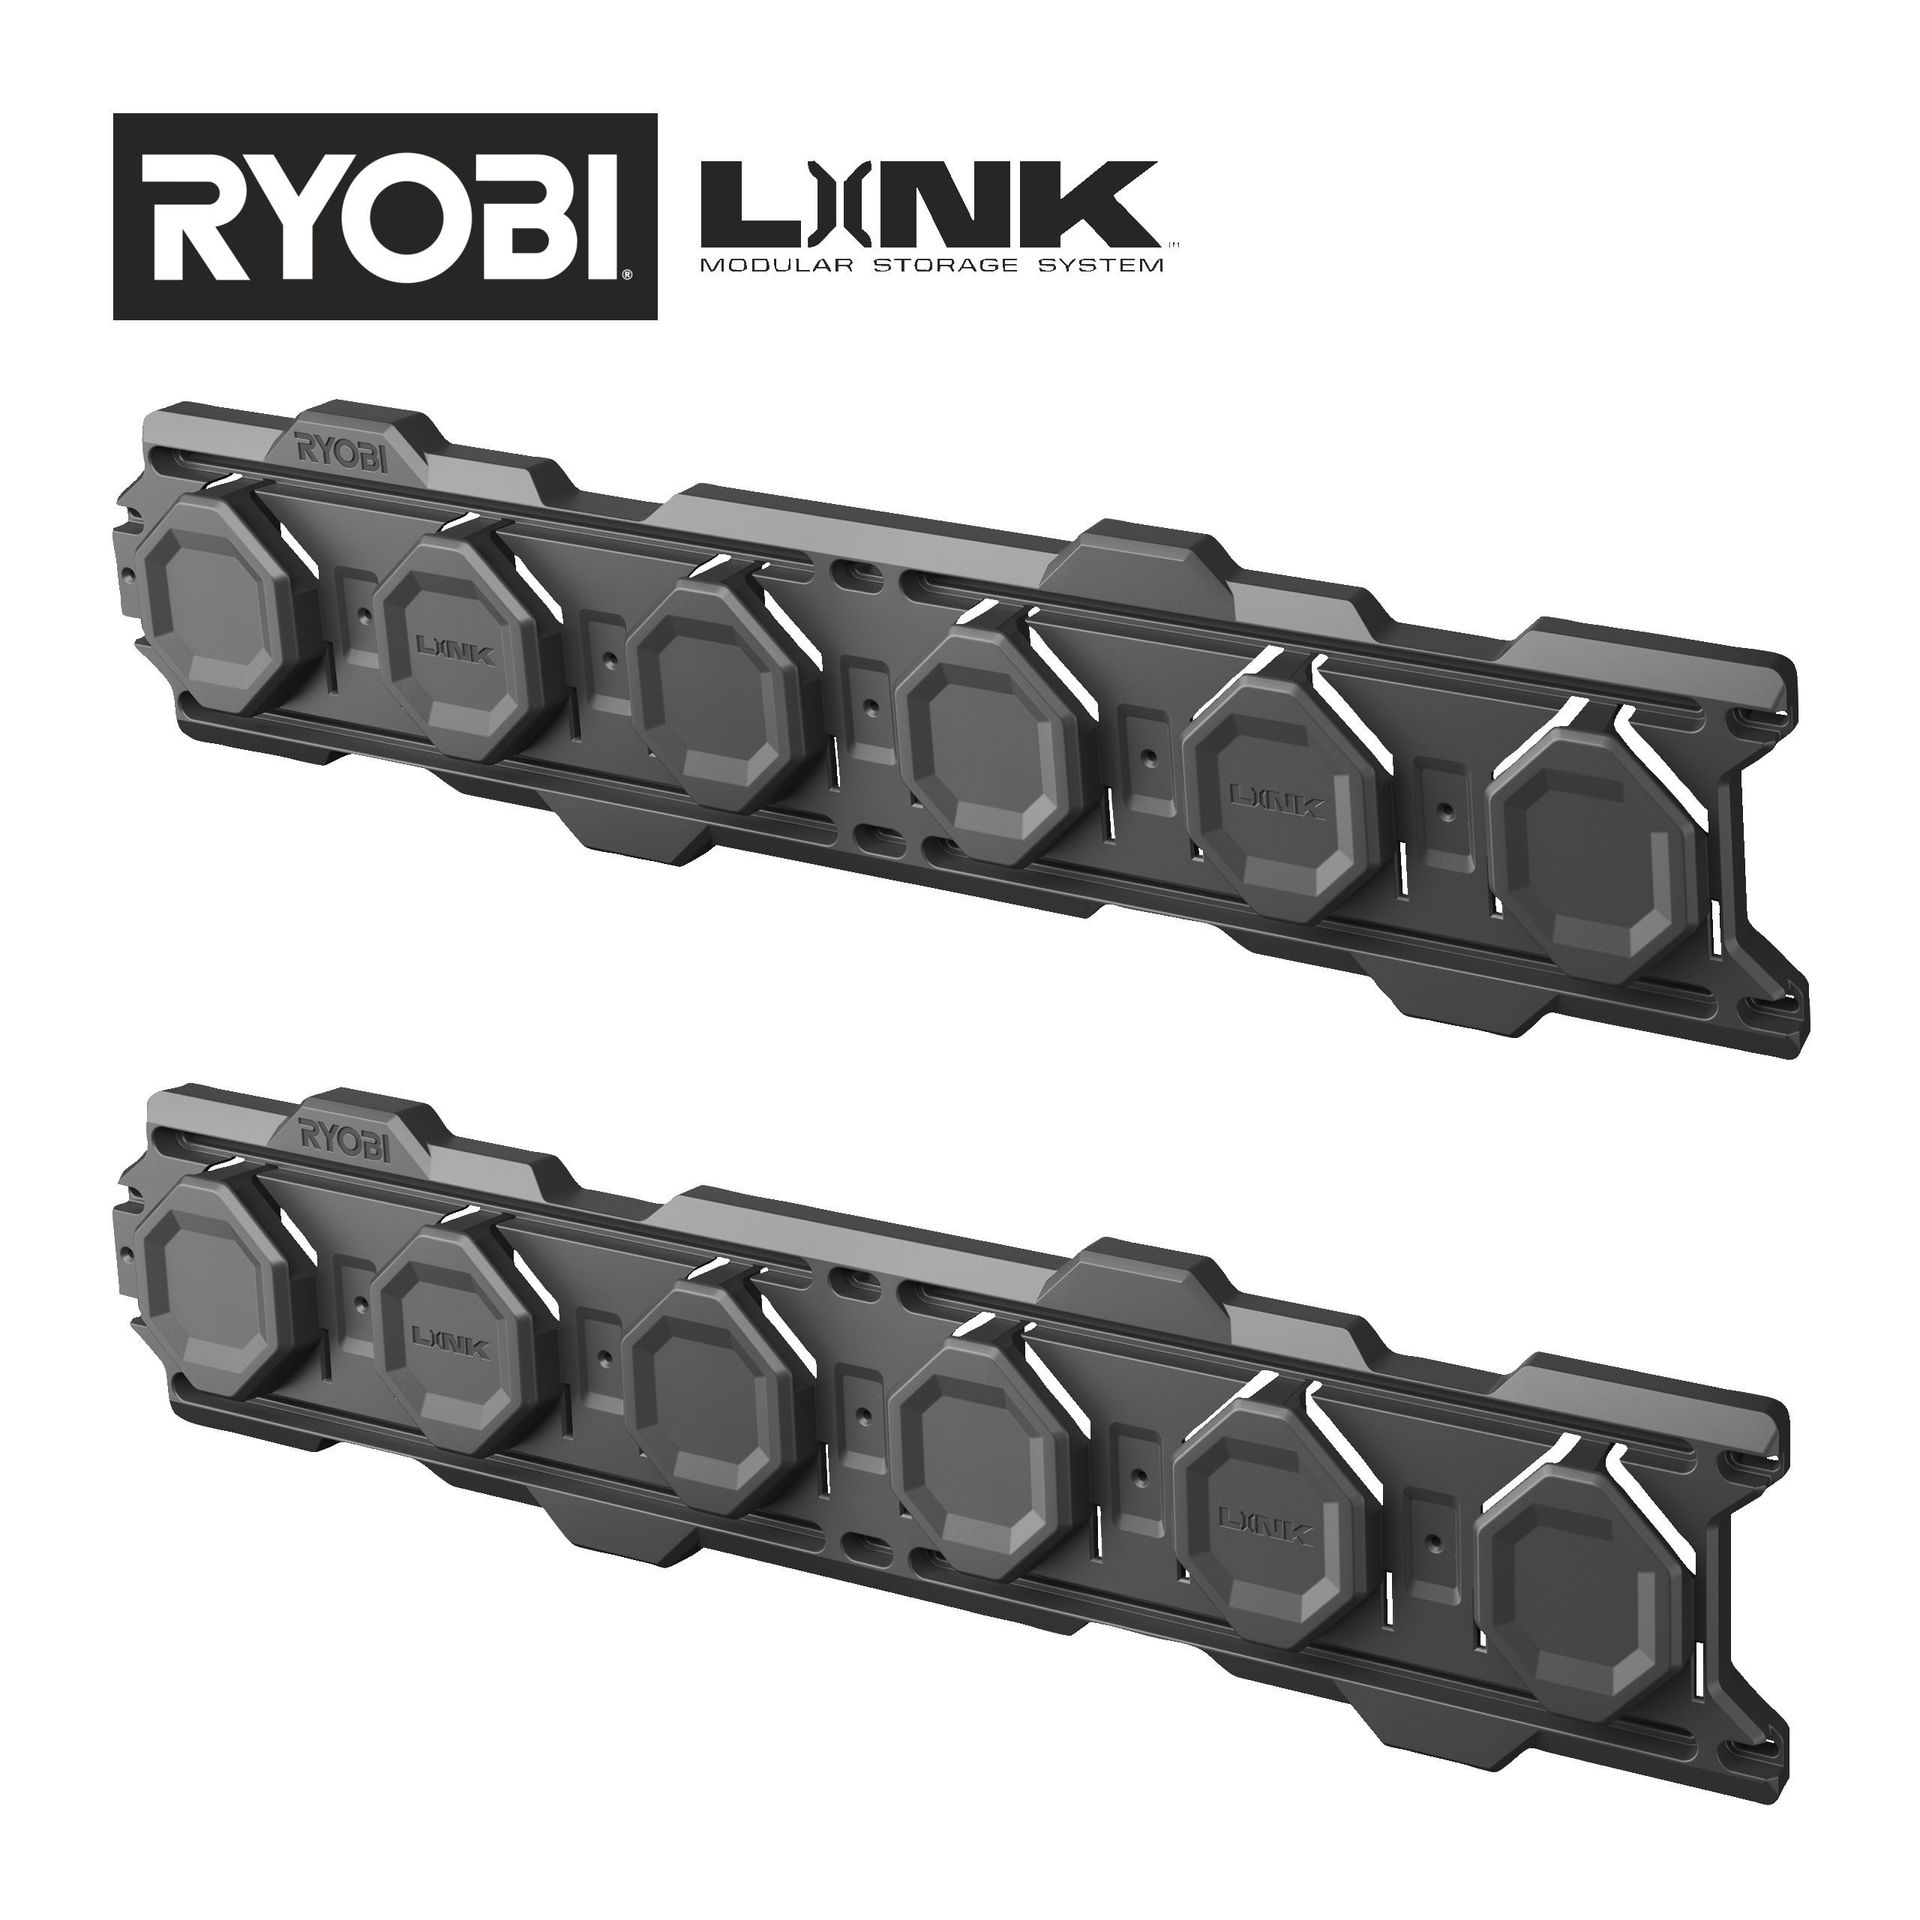 Ryobi Szyna ścienna 2-moduły 84 cm do mocowania elementów systemu RYOBI LINK | RSL2WR-2